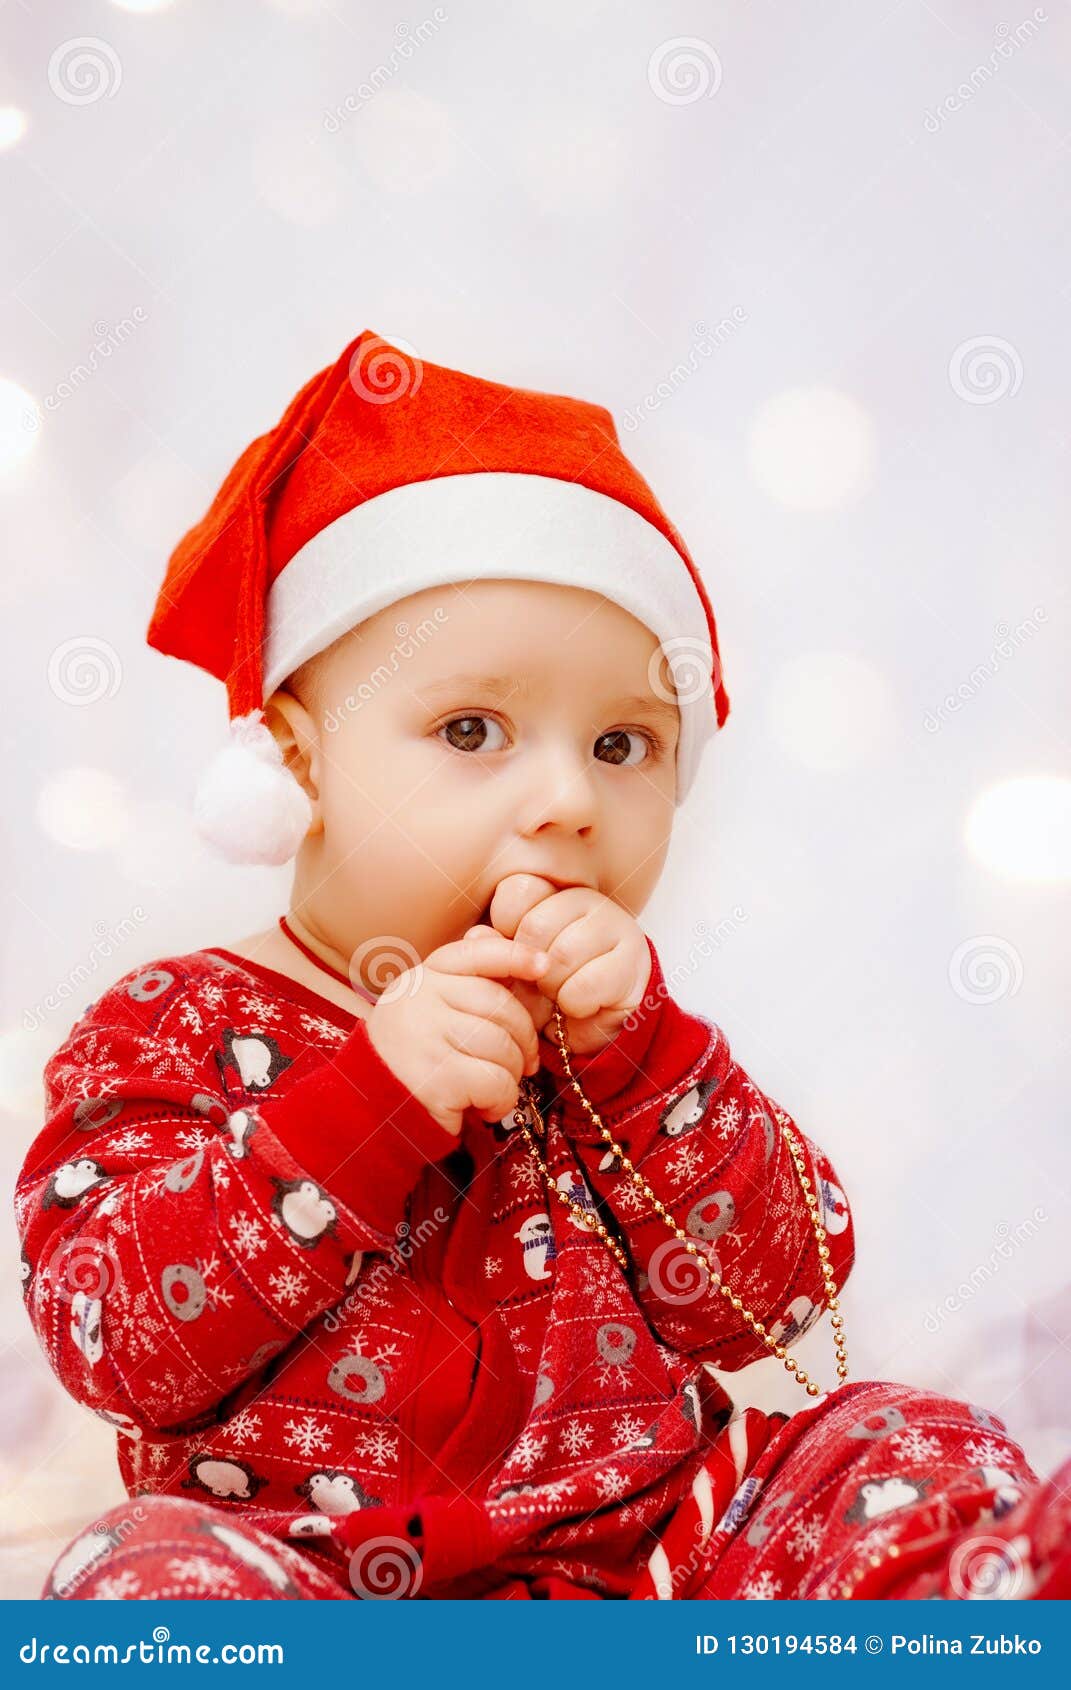 Bebé Lindo En Pijamas Y El Sombrero Papá Noel En Fondo De La Navidad Foto de archivo - Imagen de curioso, coma: 130194584